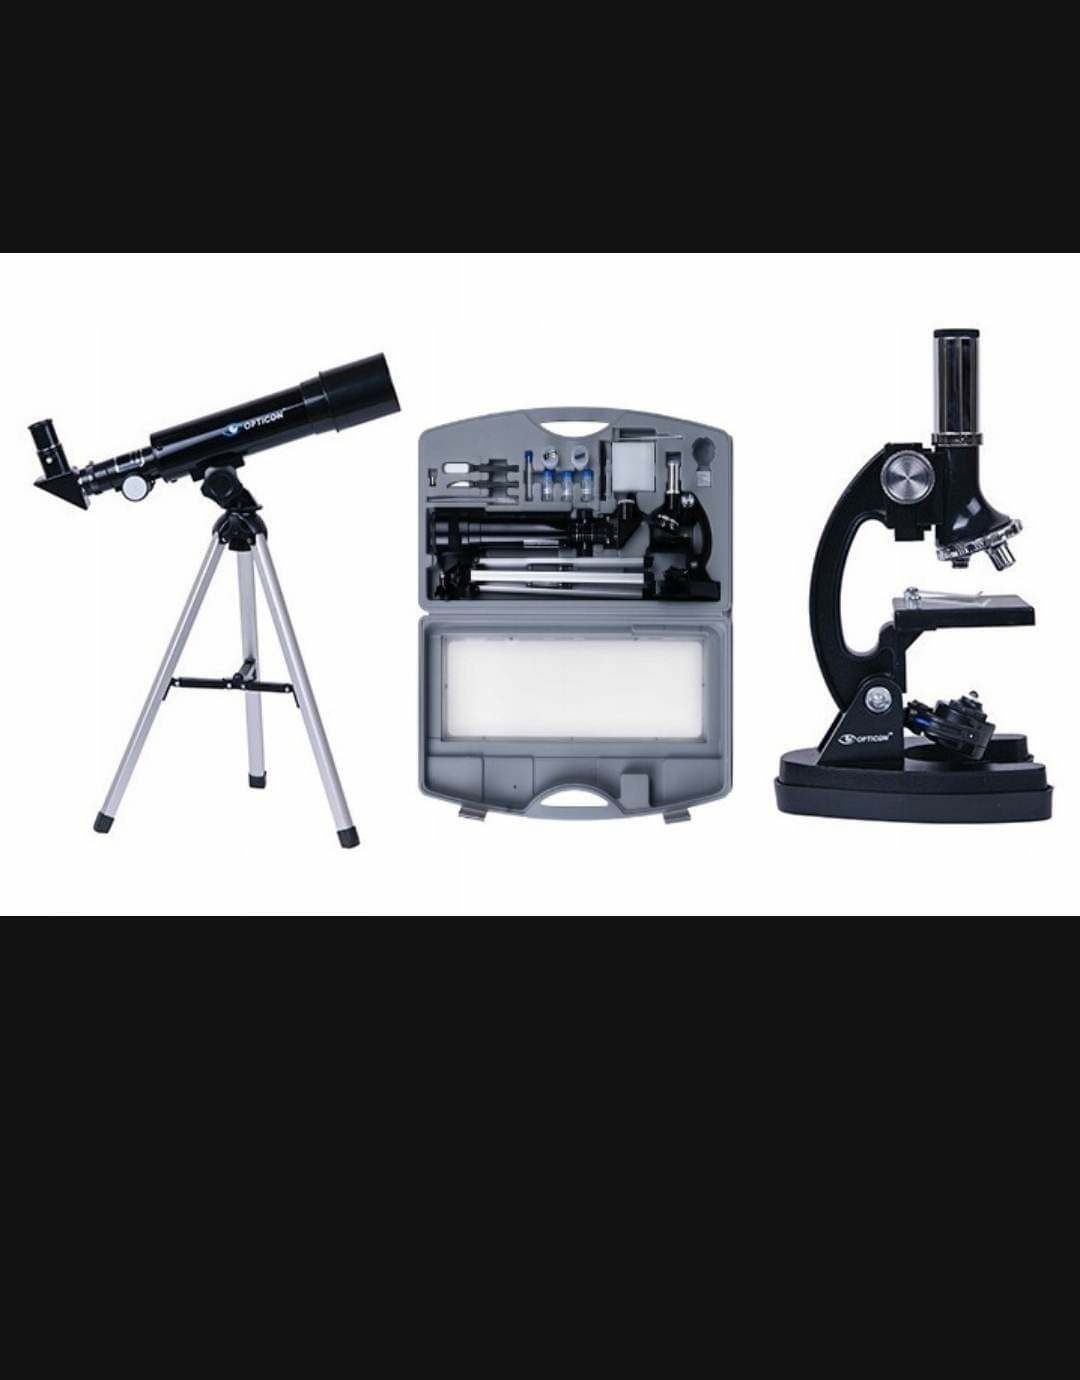 Zestaw Opticon teleskop plus mikroskop 47 części